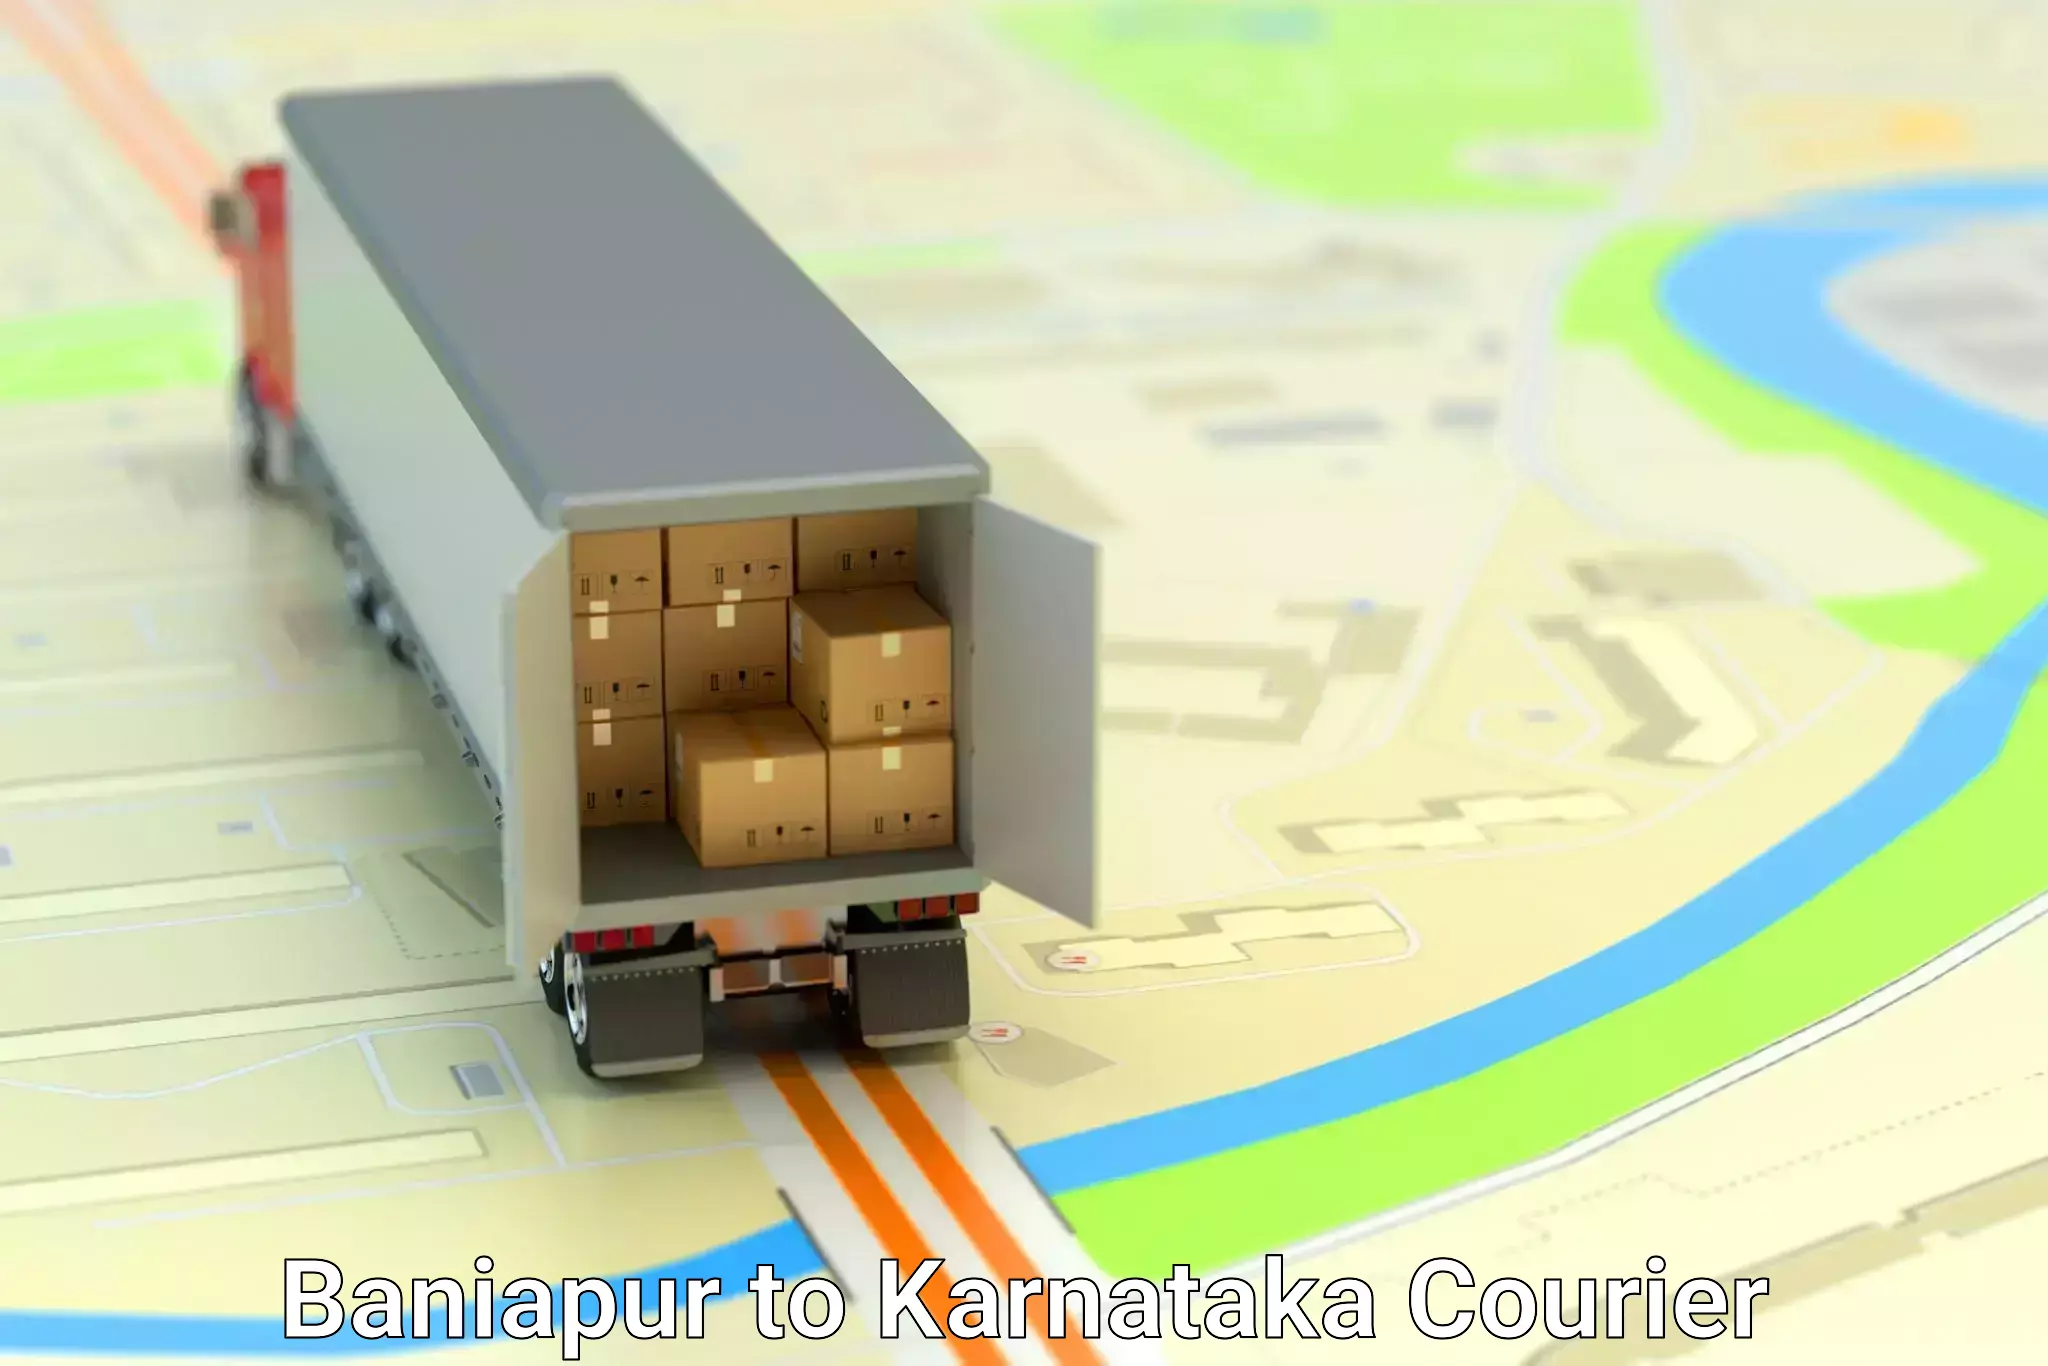 Furniture moving plans Baniapur to Karnataka